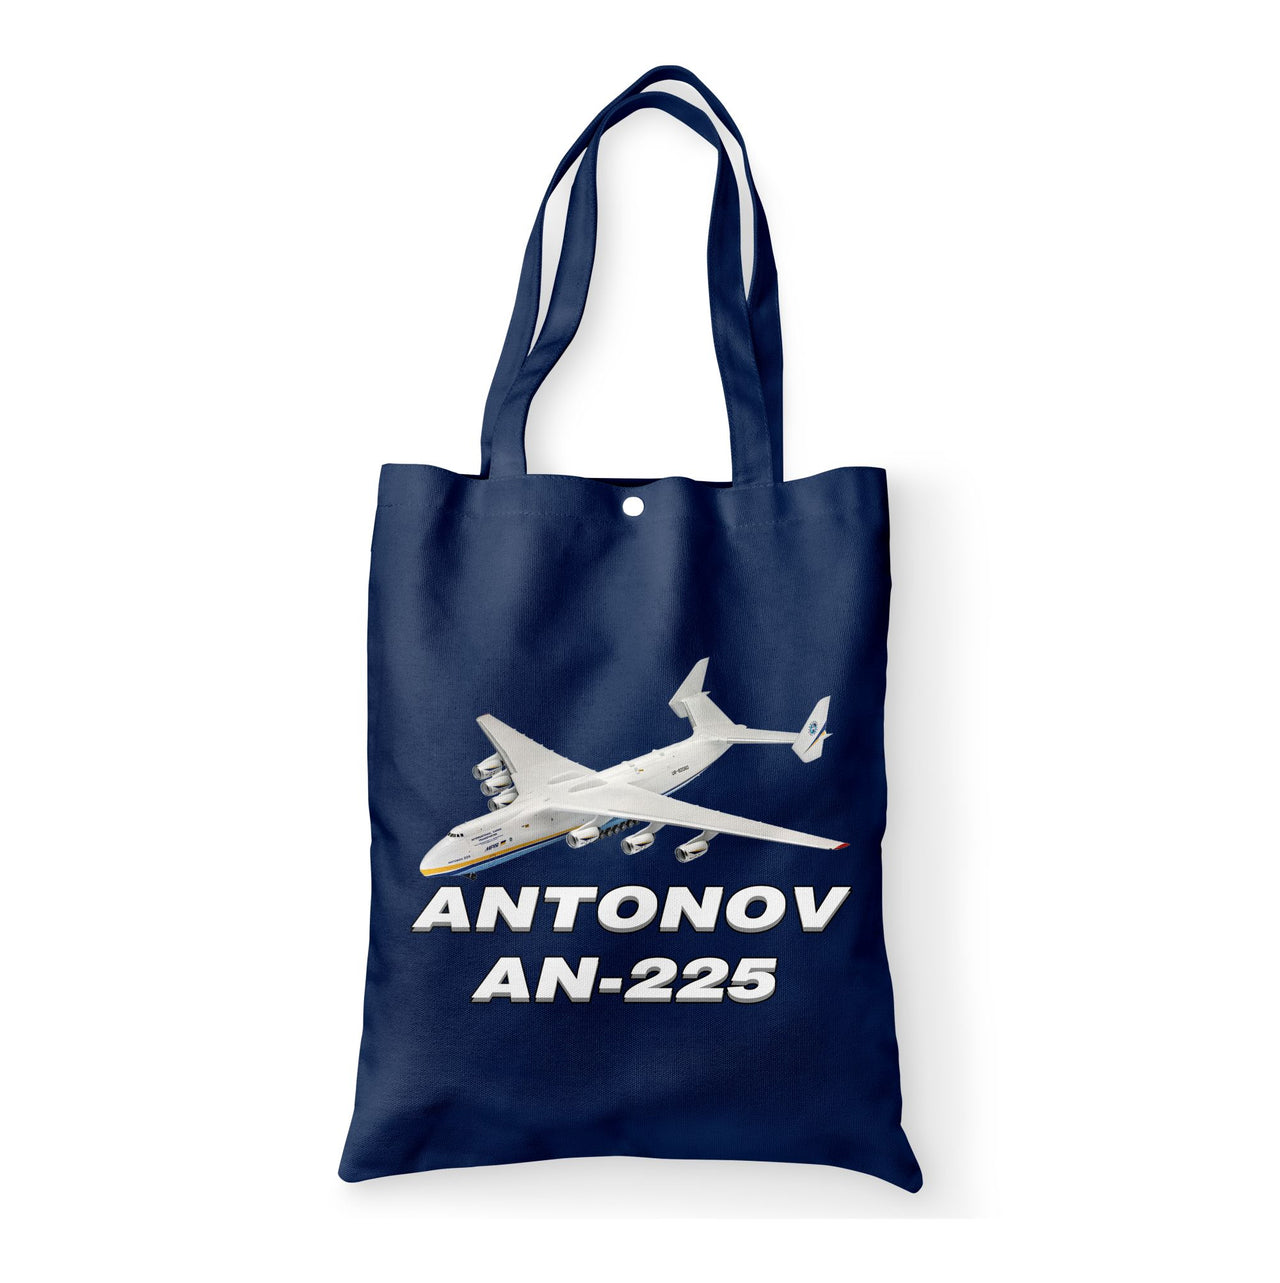 Antonov AN-225 (12) Designed Tote Bags